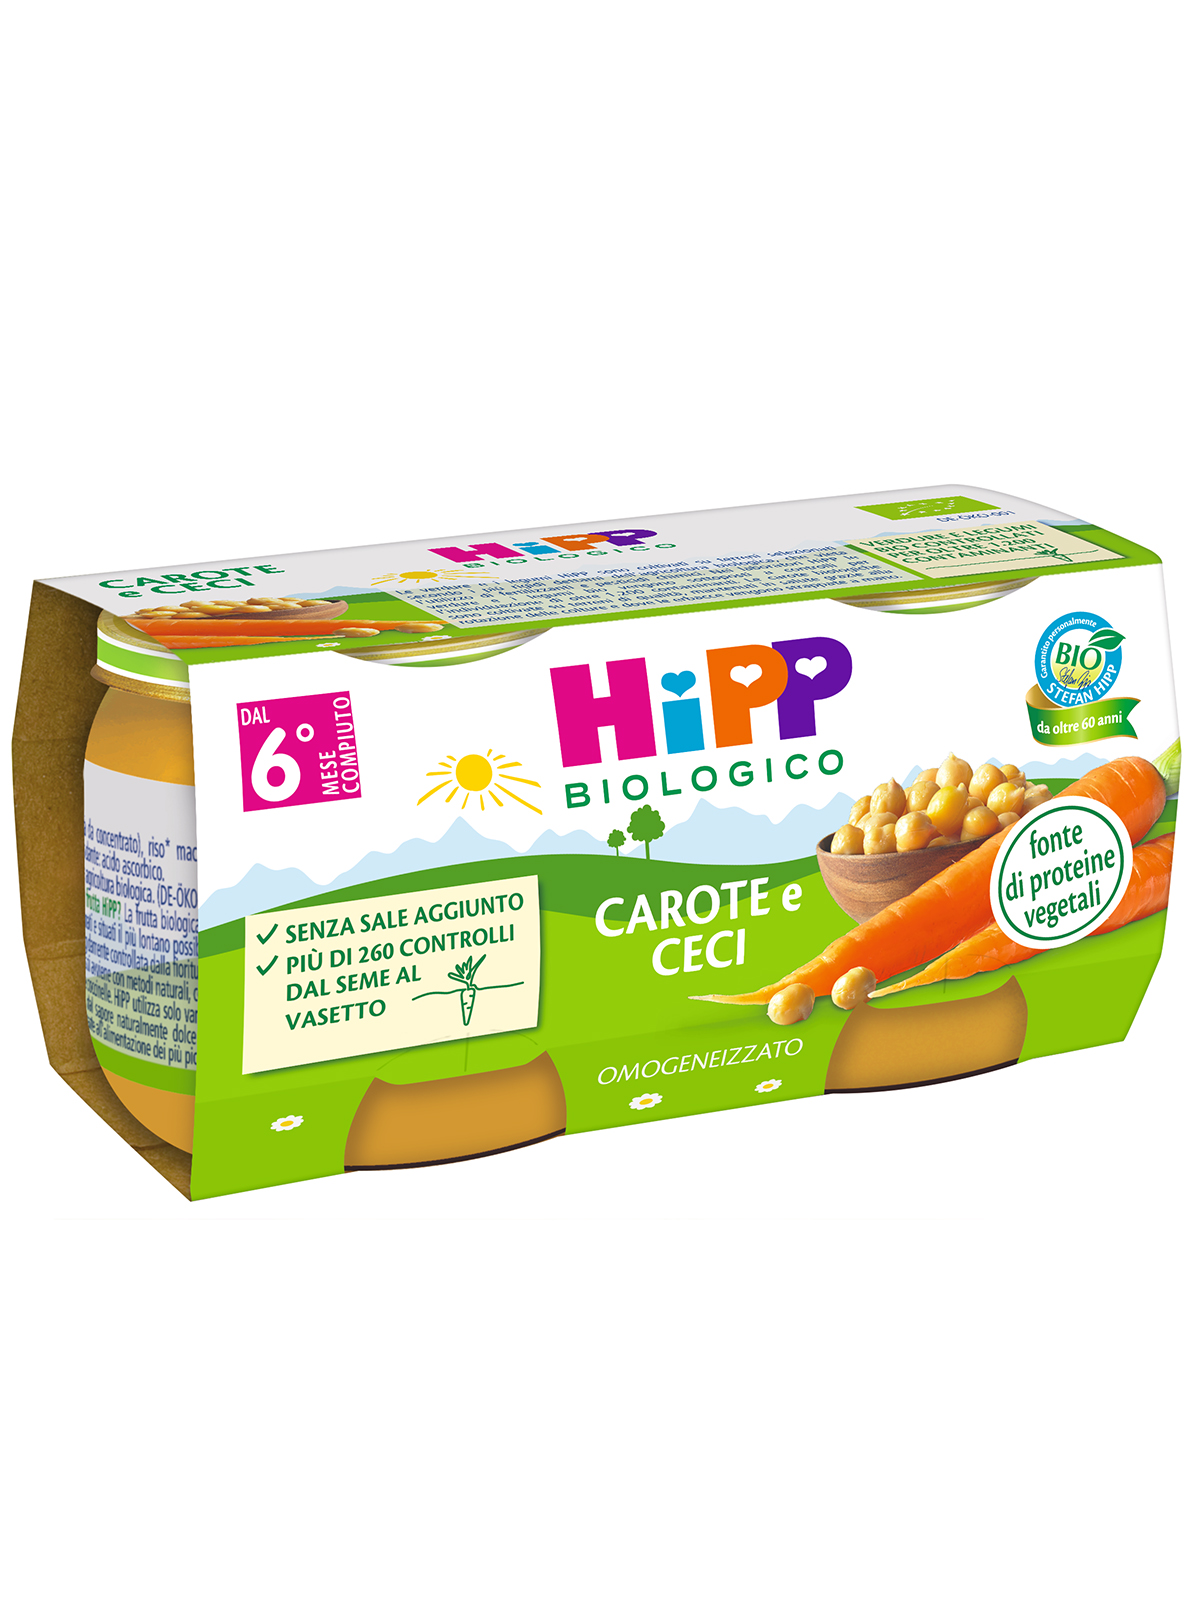 Hipp - omogeneizzato carote e ceci 2x80g - Hipp